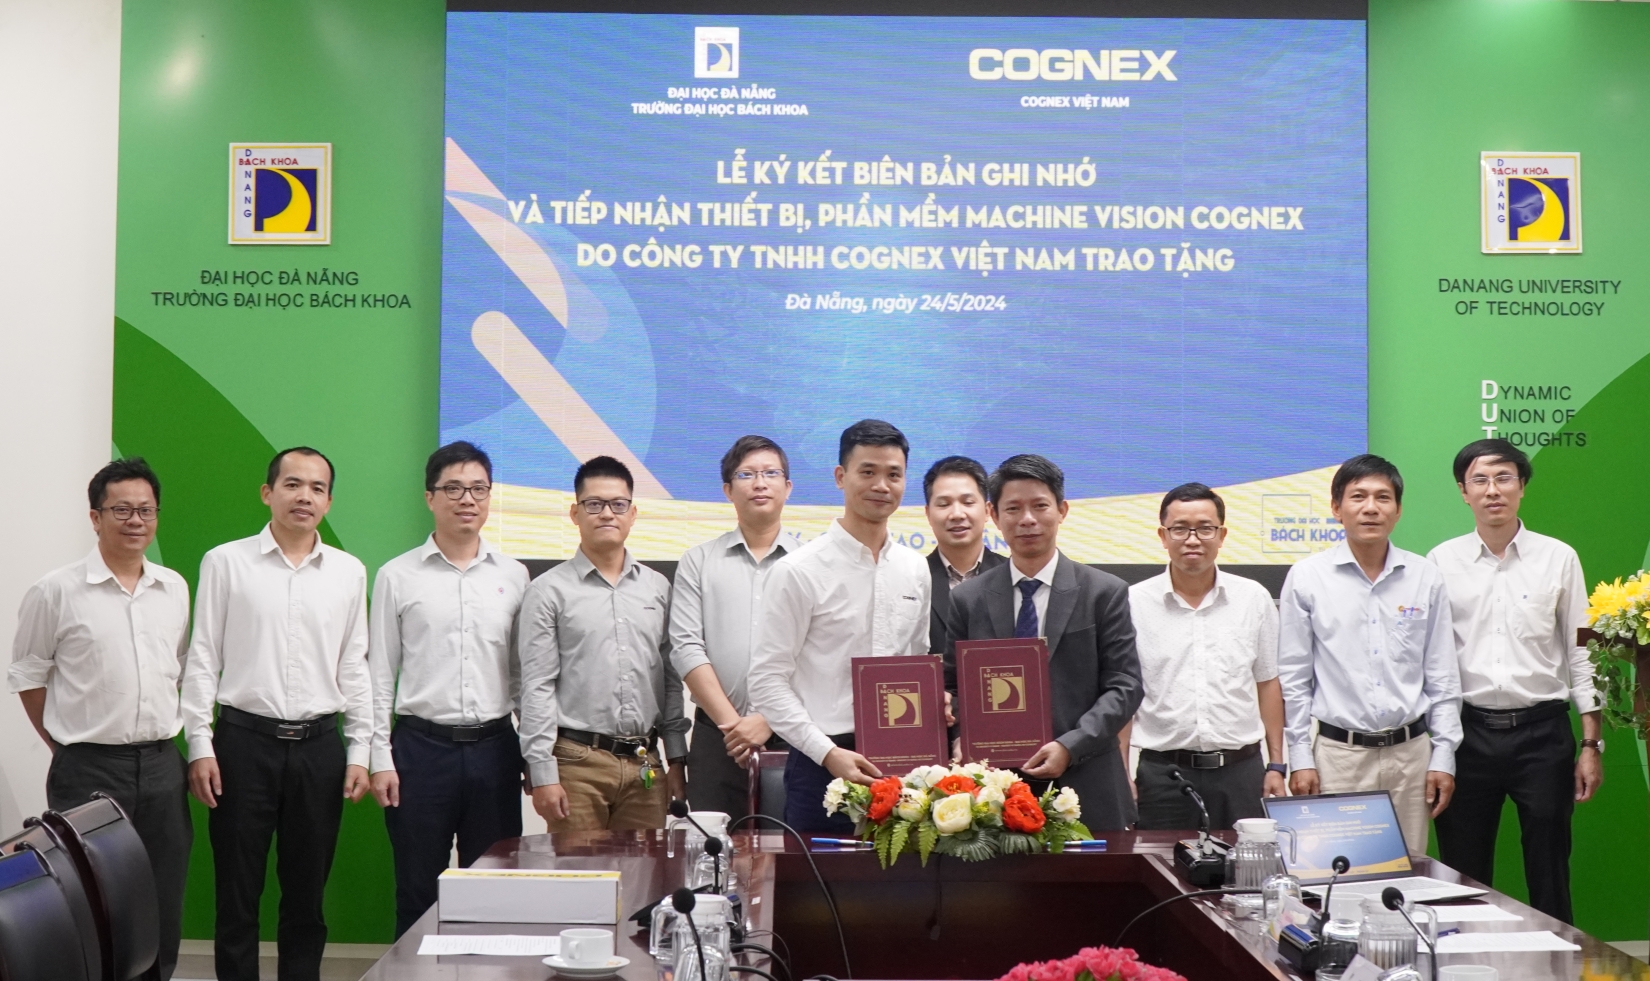 Trường Đại học Bách khoa hợp tác với Cognex Việt Nam